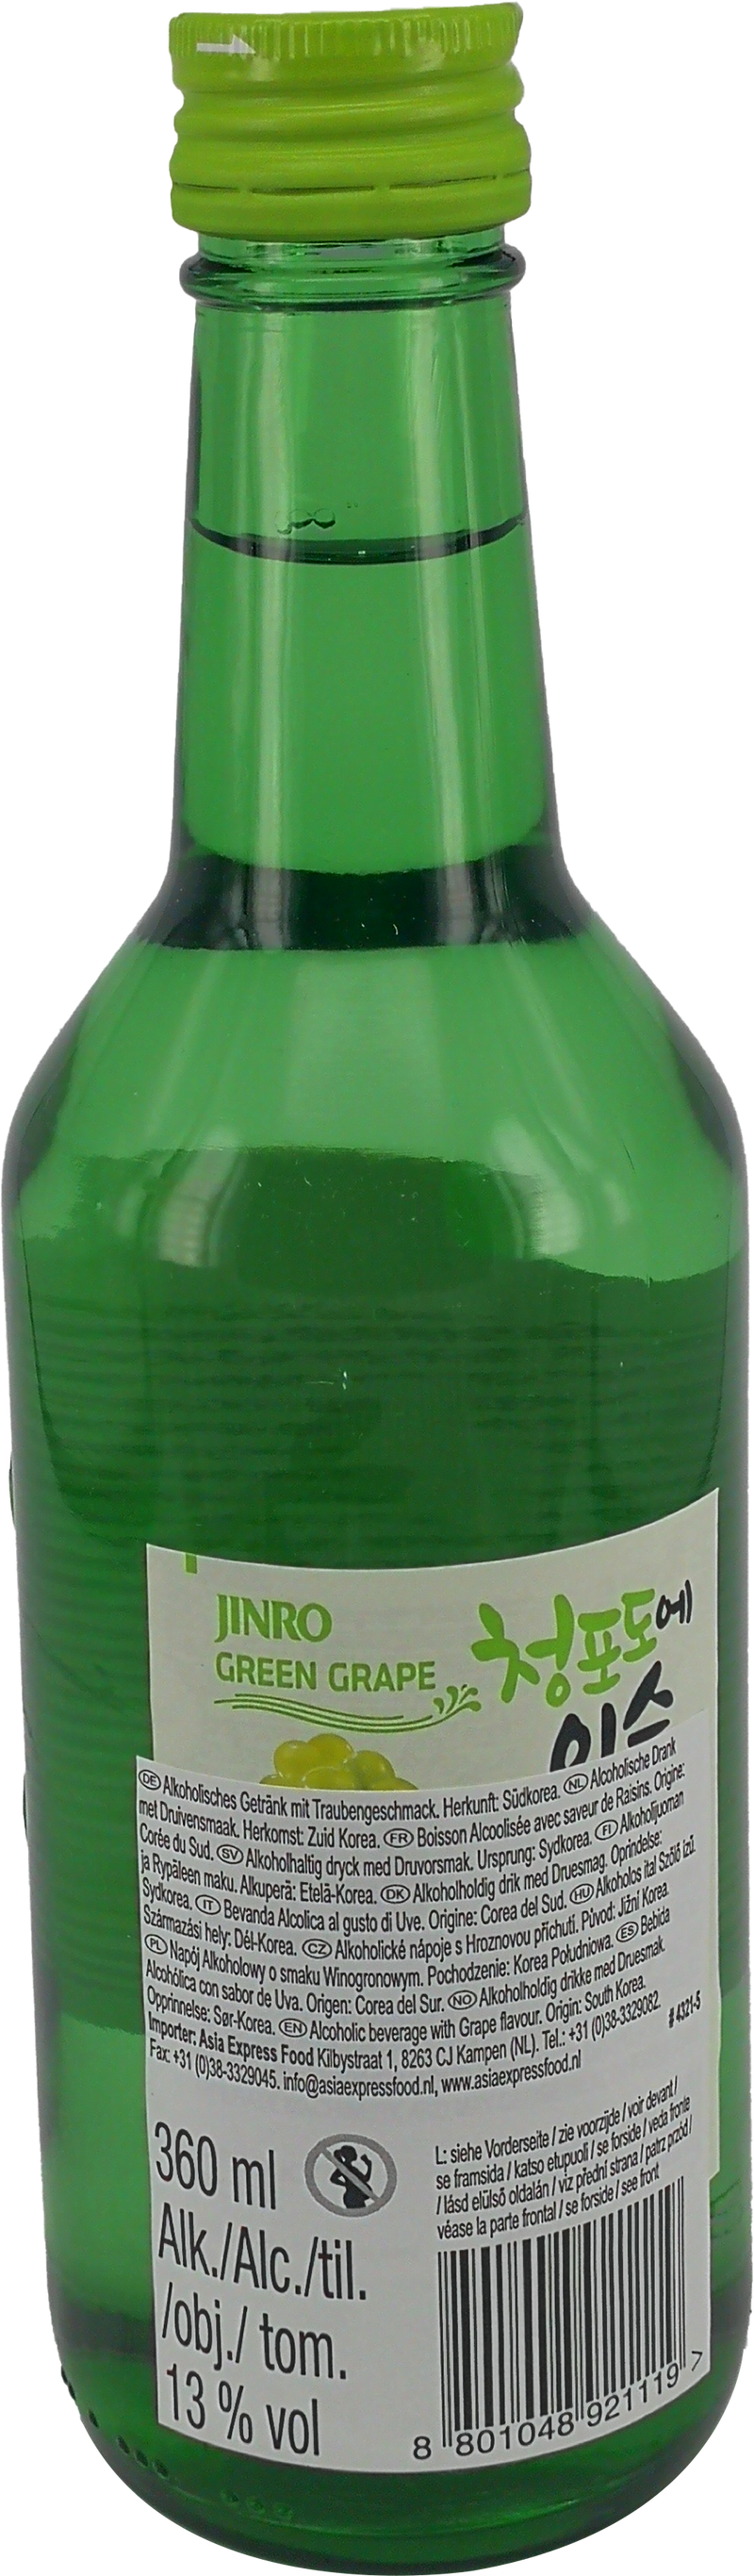 真露 韩国烧酒13度葡萄味/Jinro Soju Grape Vol. 13% 360ml